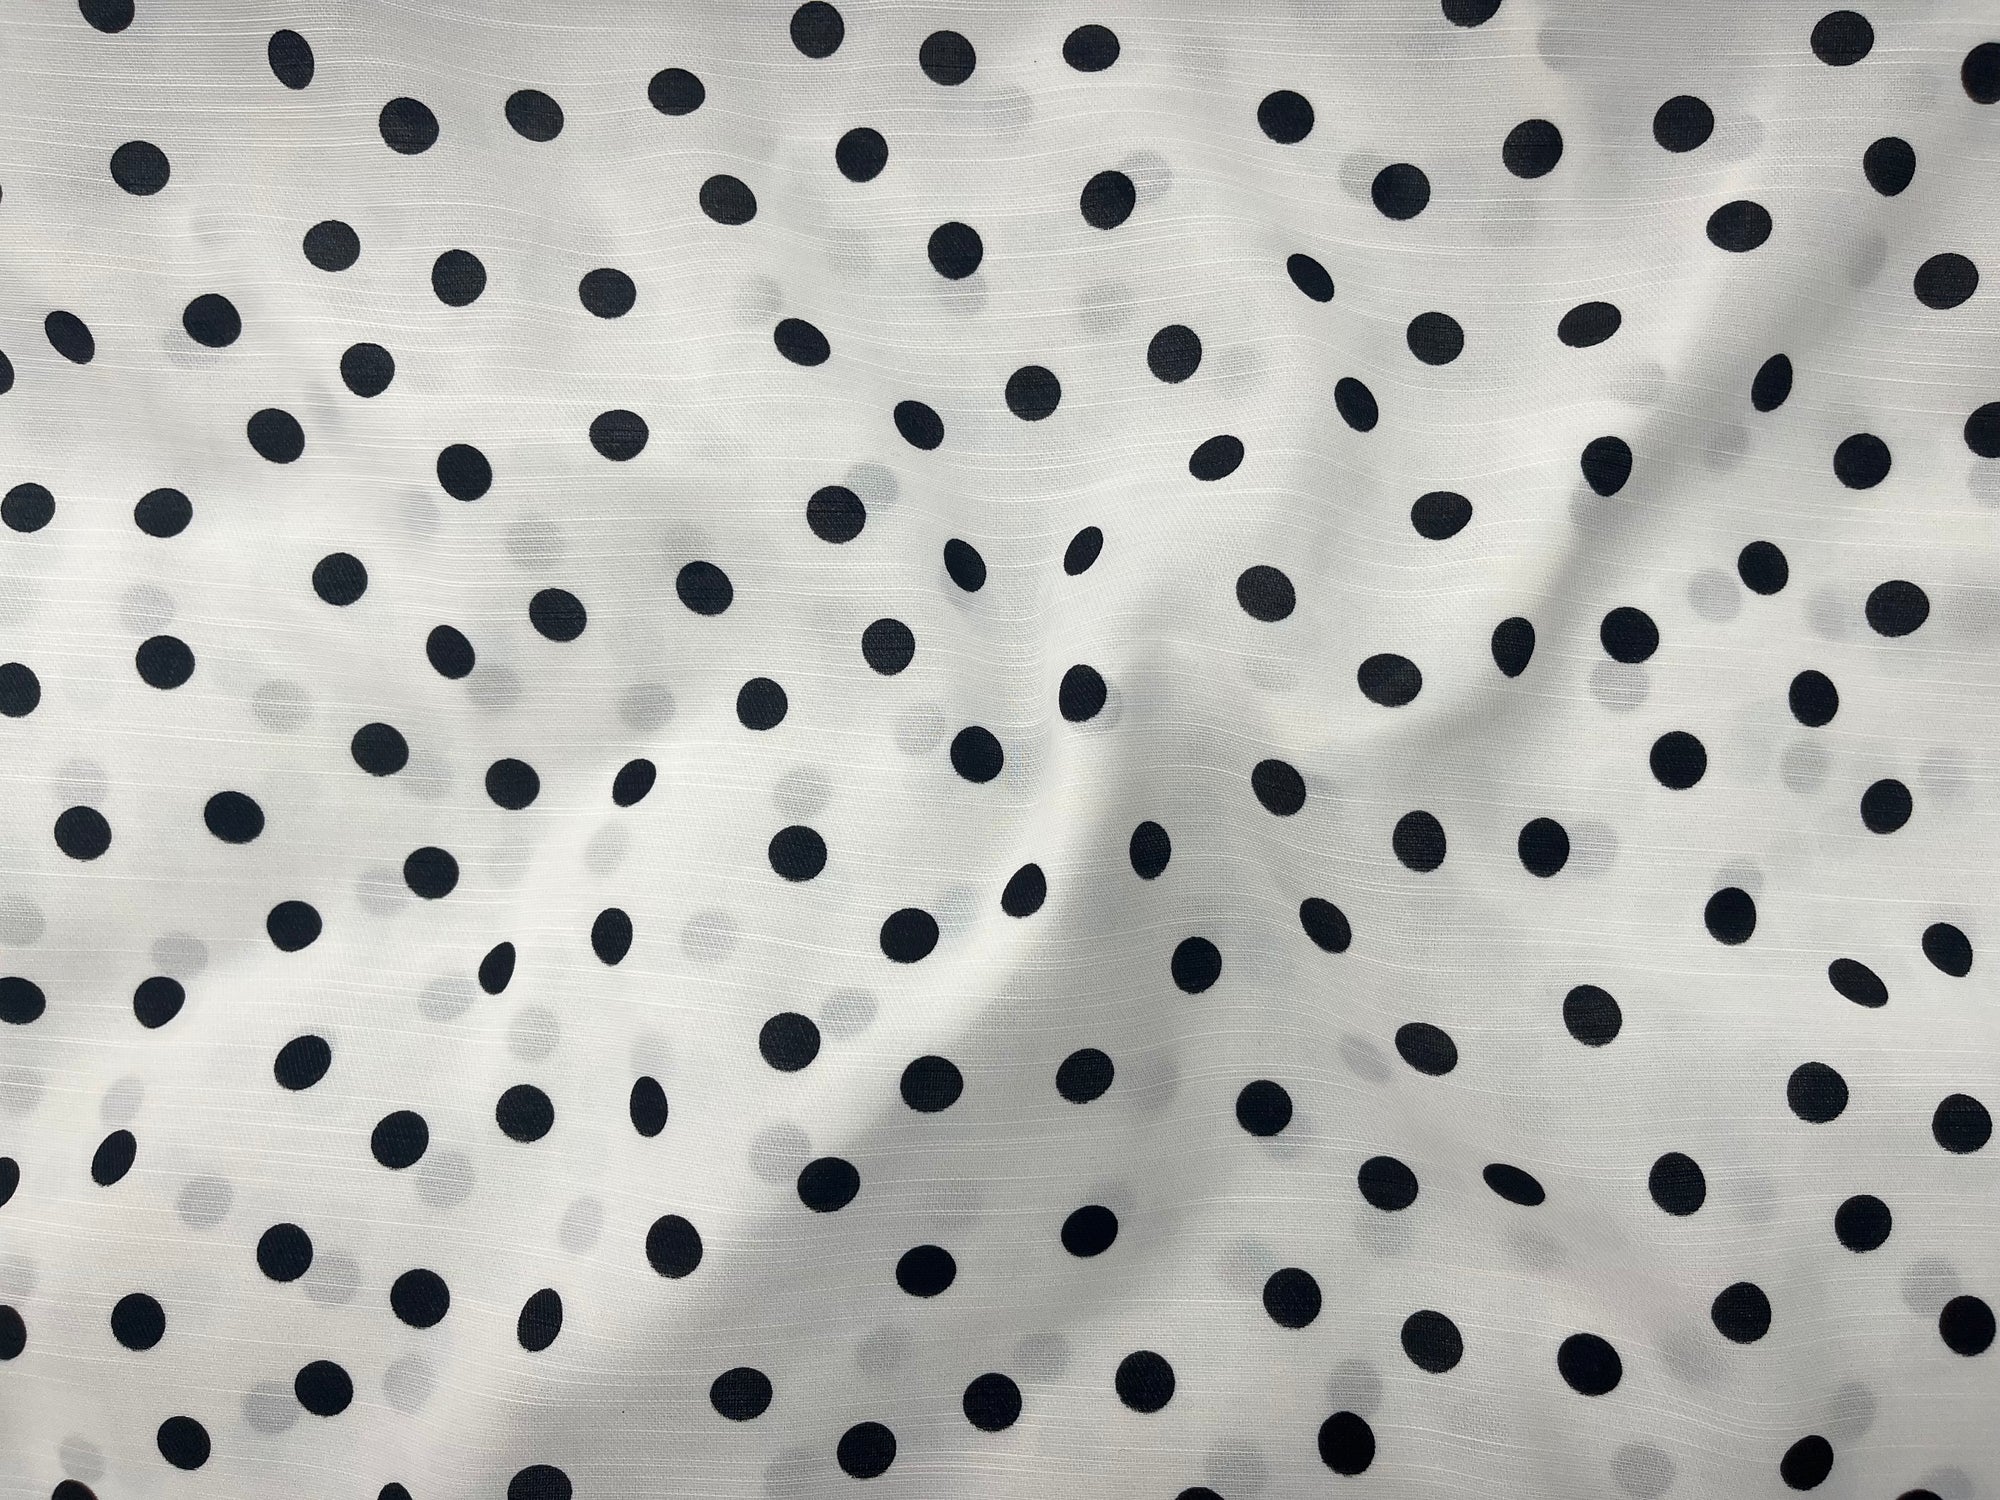 10mm Polka Dots - Printed Crepe Fabric